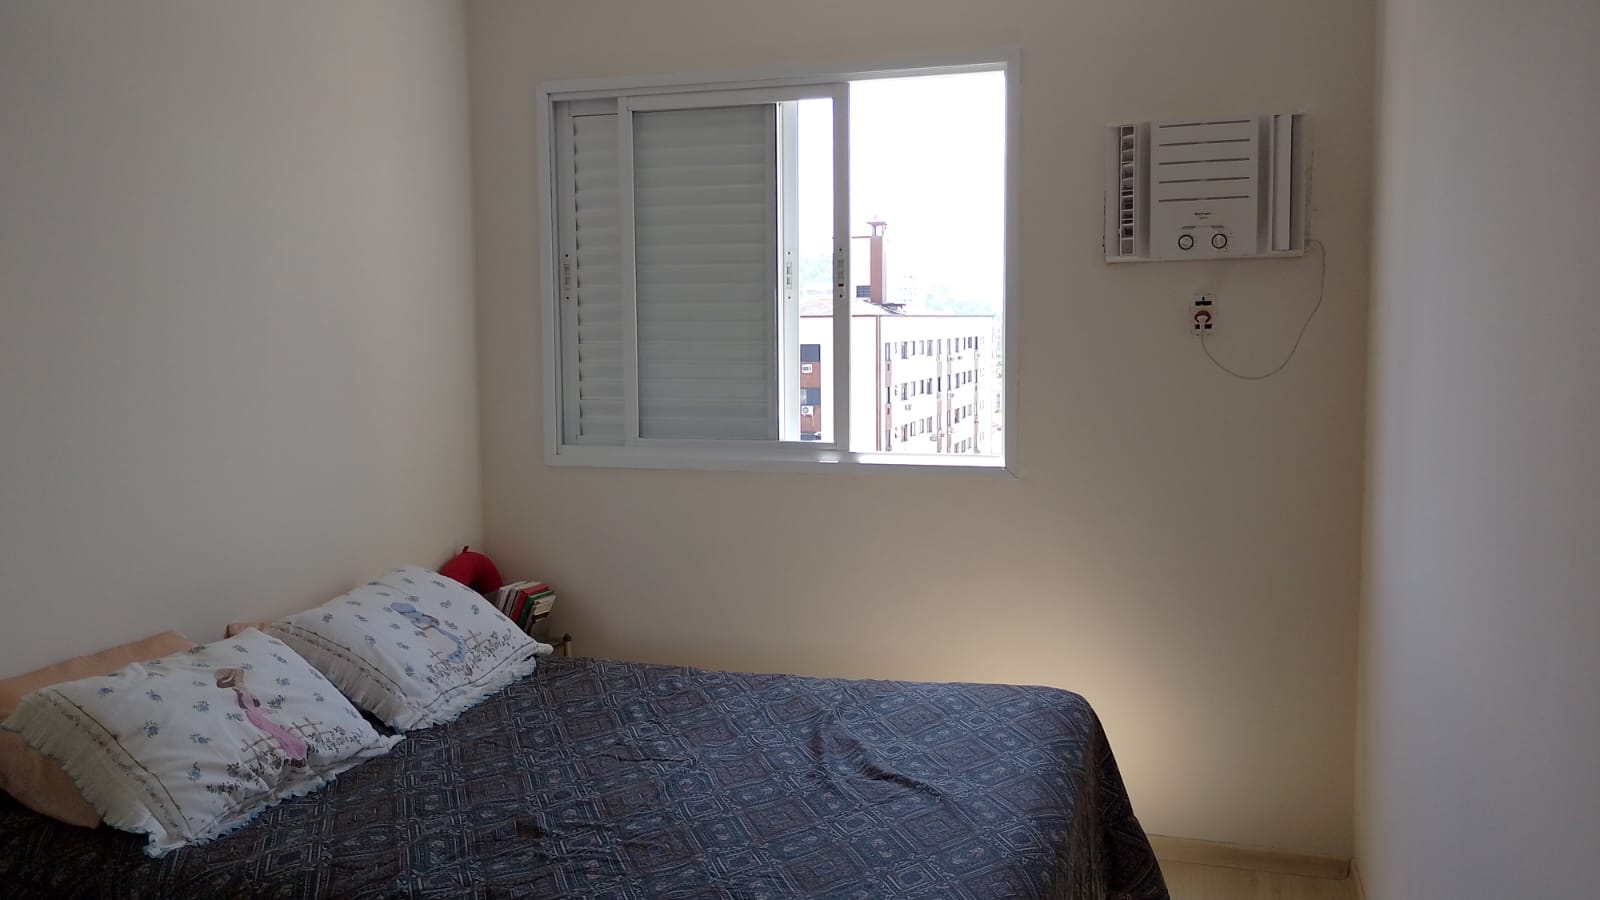 Apartamento Boqueirao 2 dormitorios 1 suite -Sala 2 ambientes com varanda – 2 garagens e lazer - foto 22